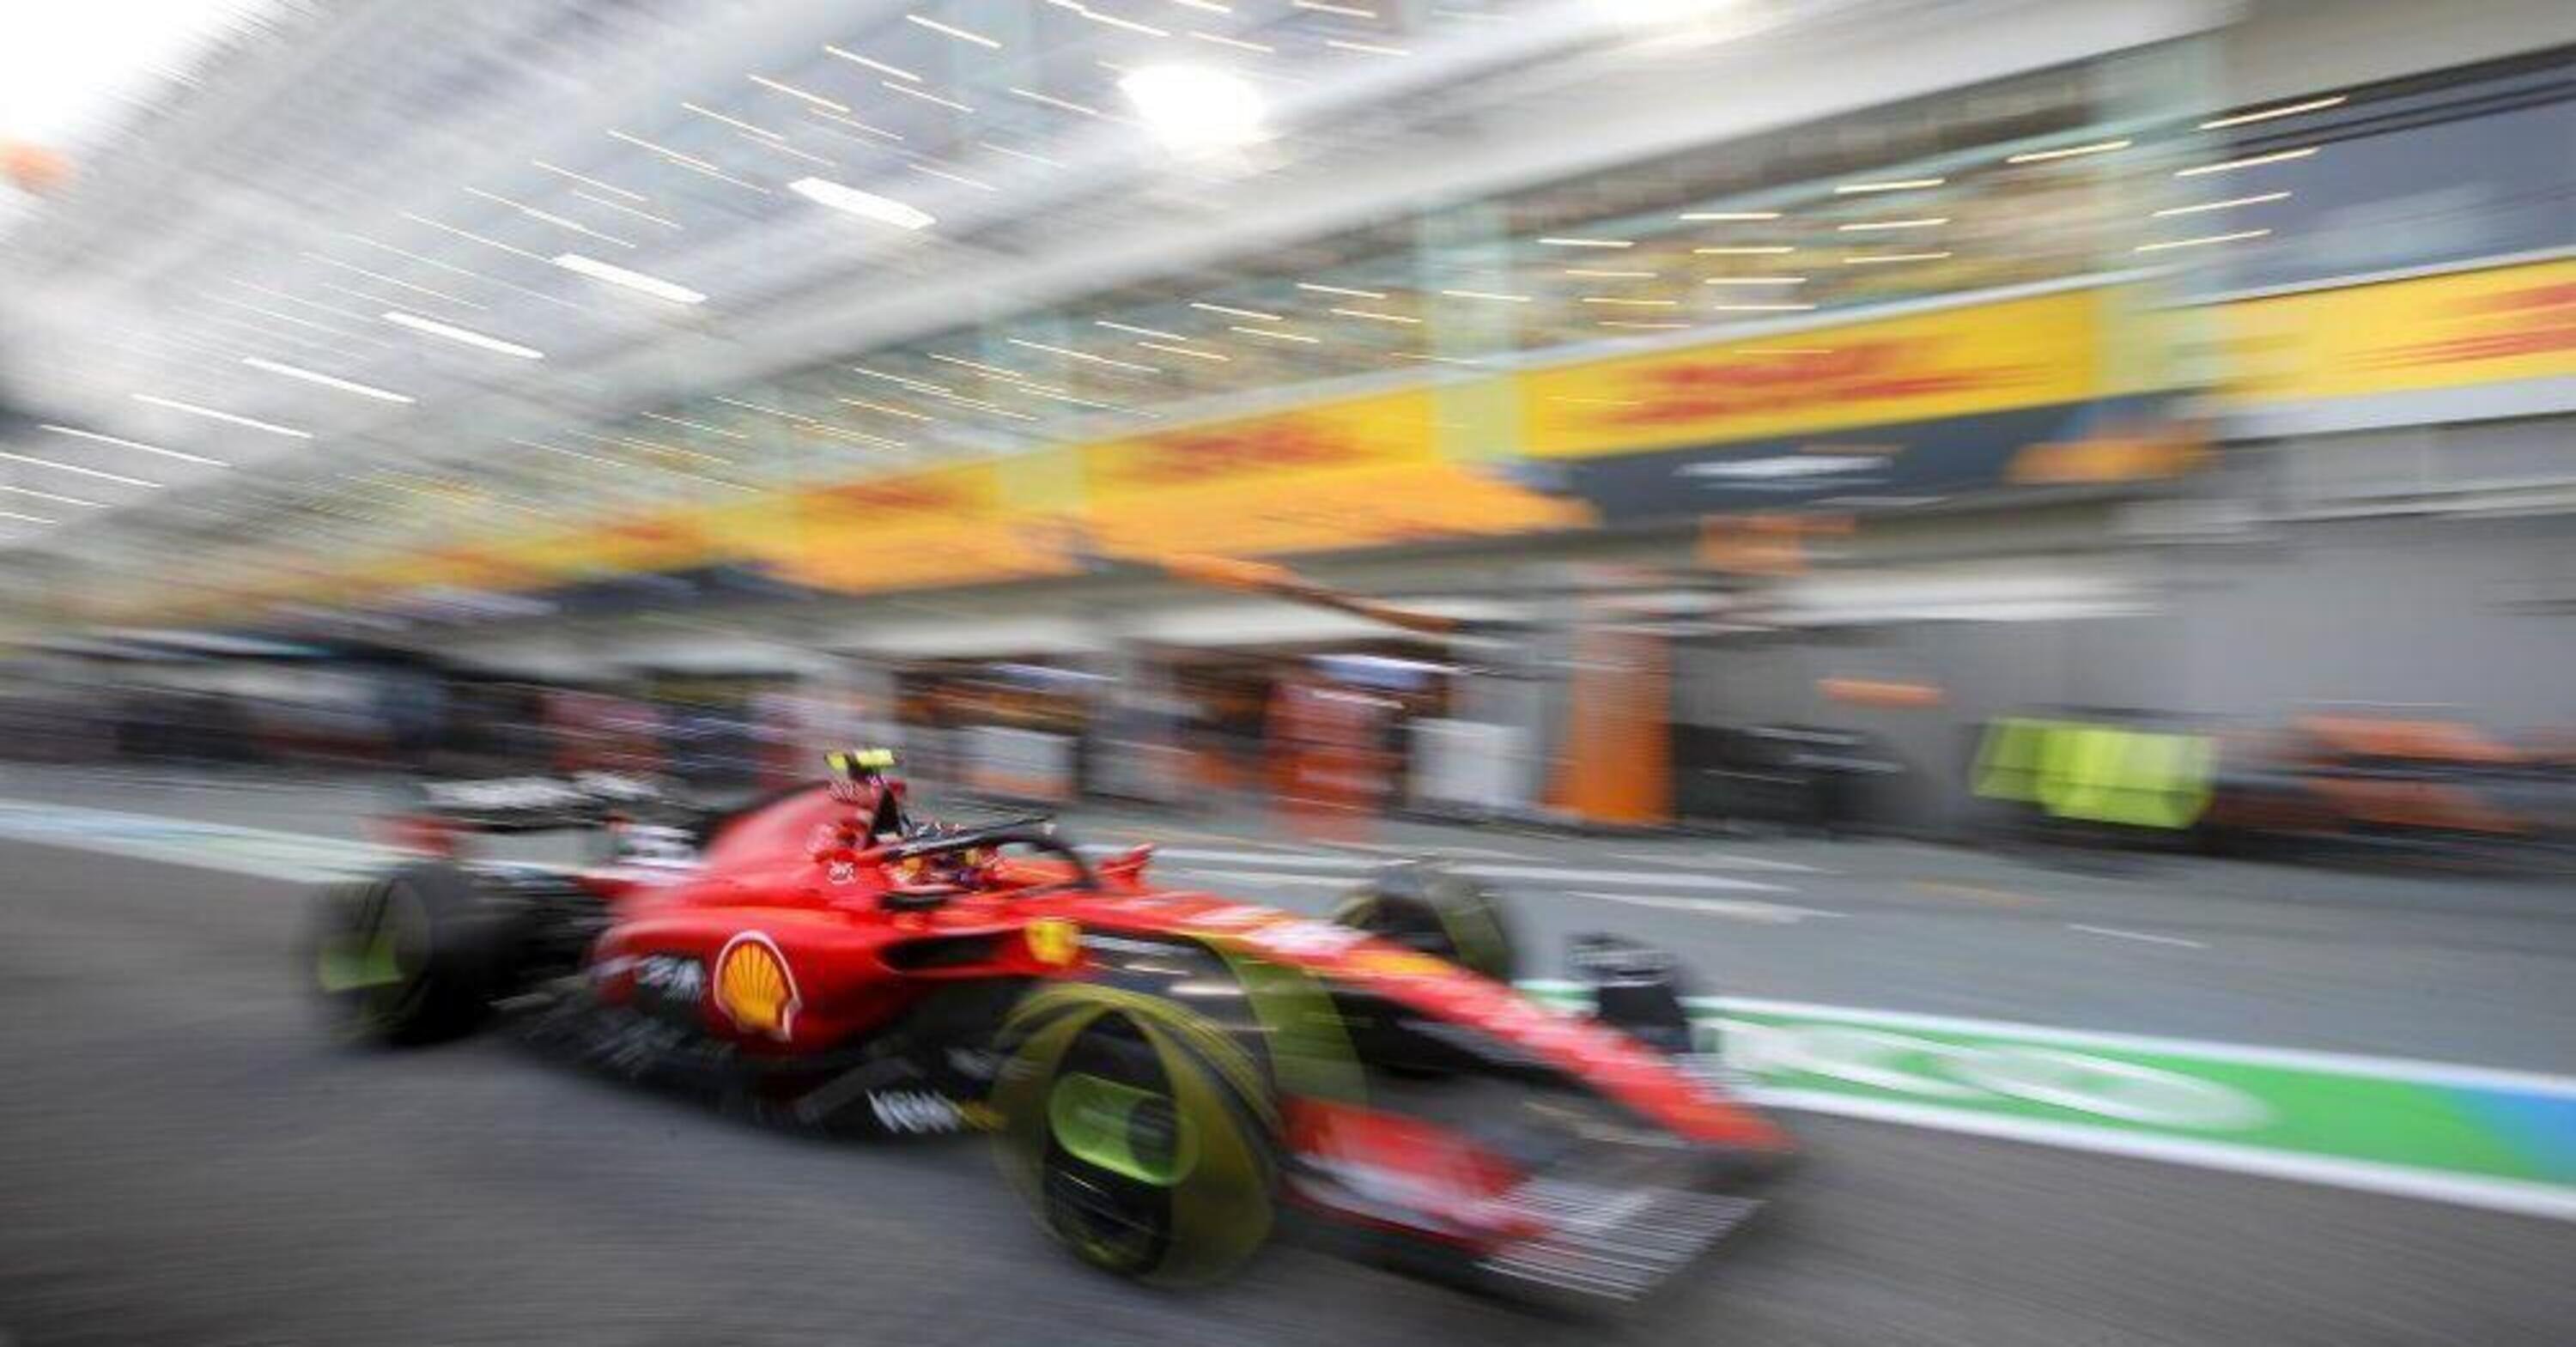 F1. GP Singapore, Risultati FP3: Sainz il migliore in pista